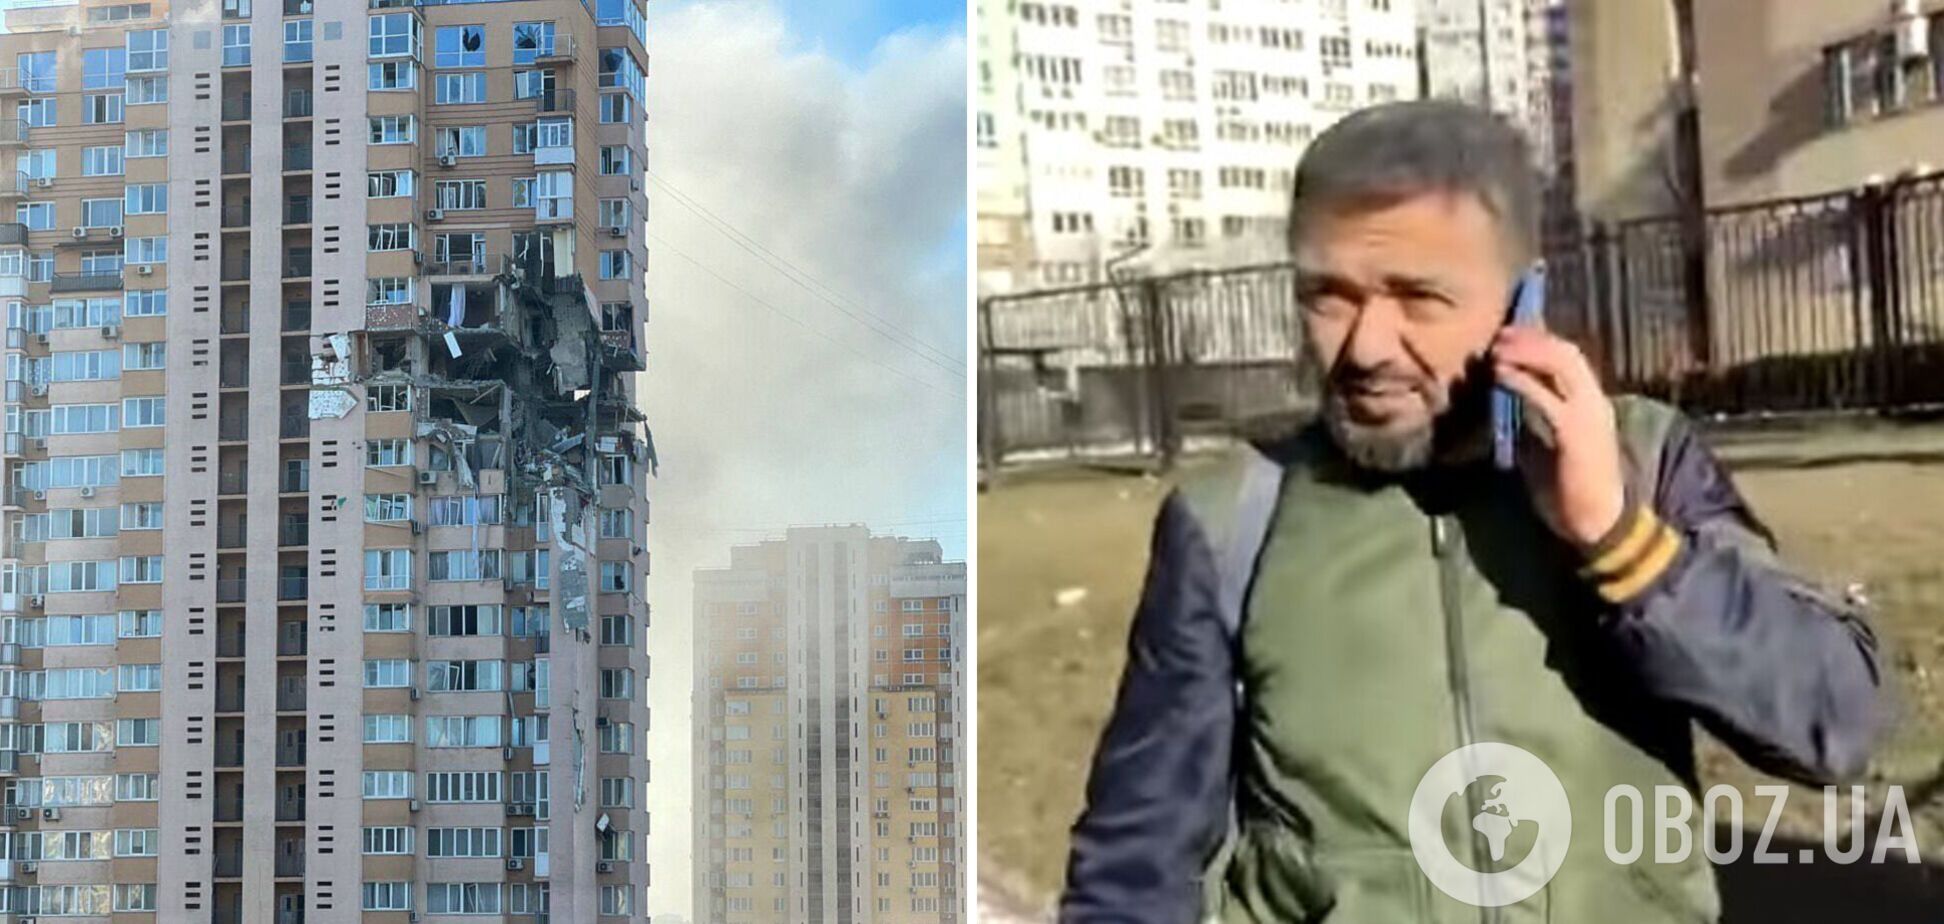 'Горите в аду': мужчина обстрелянного в Киеве дома рассказал о случившемся. Видео